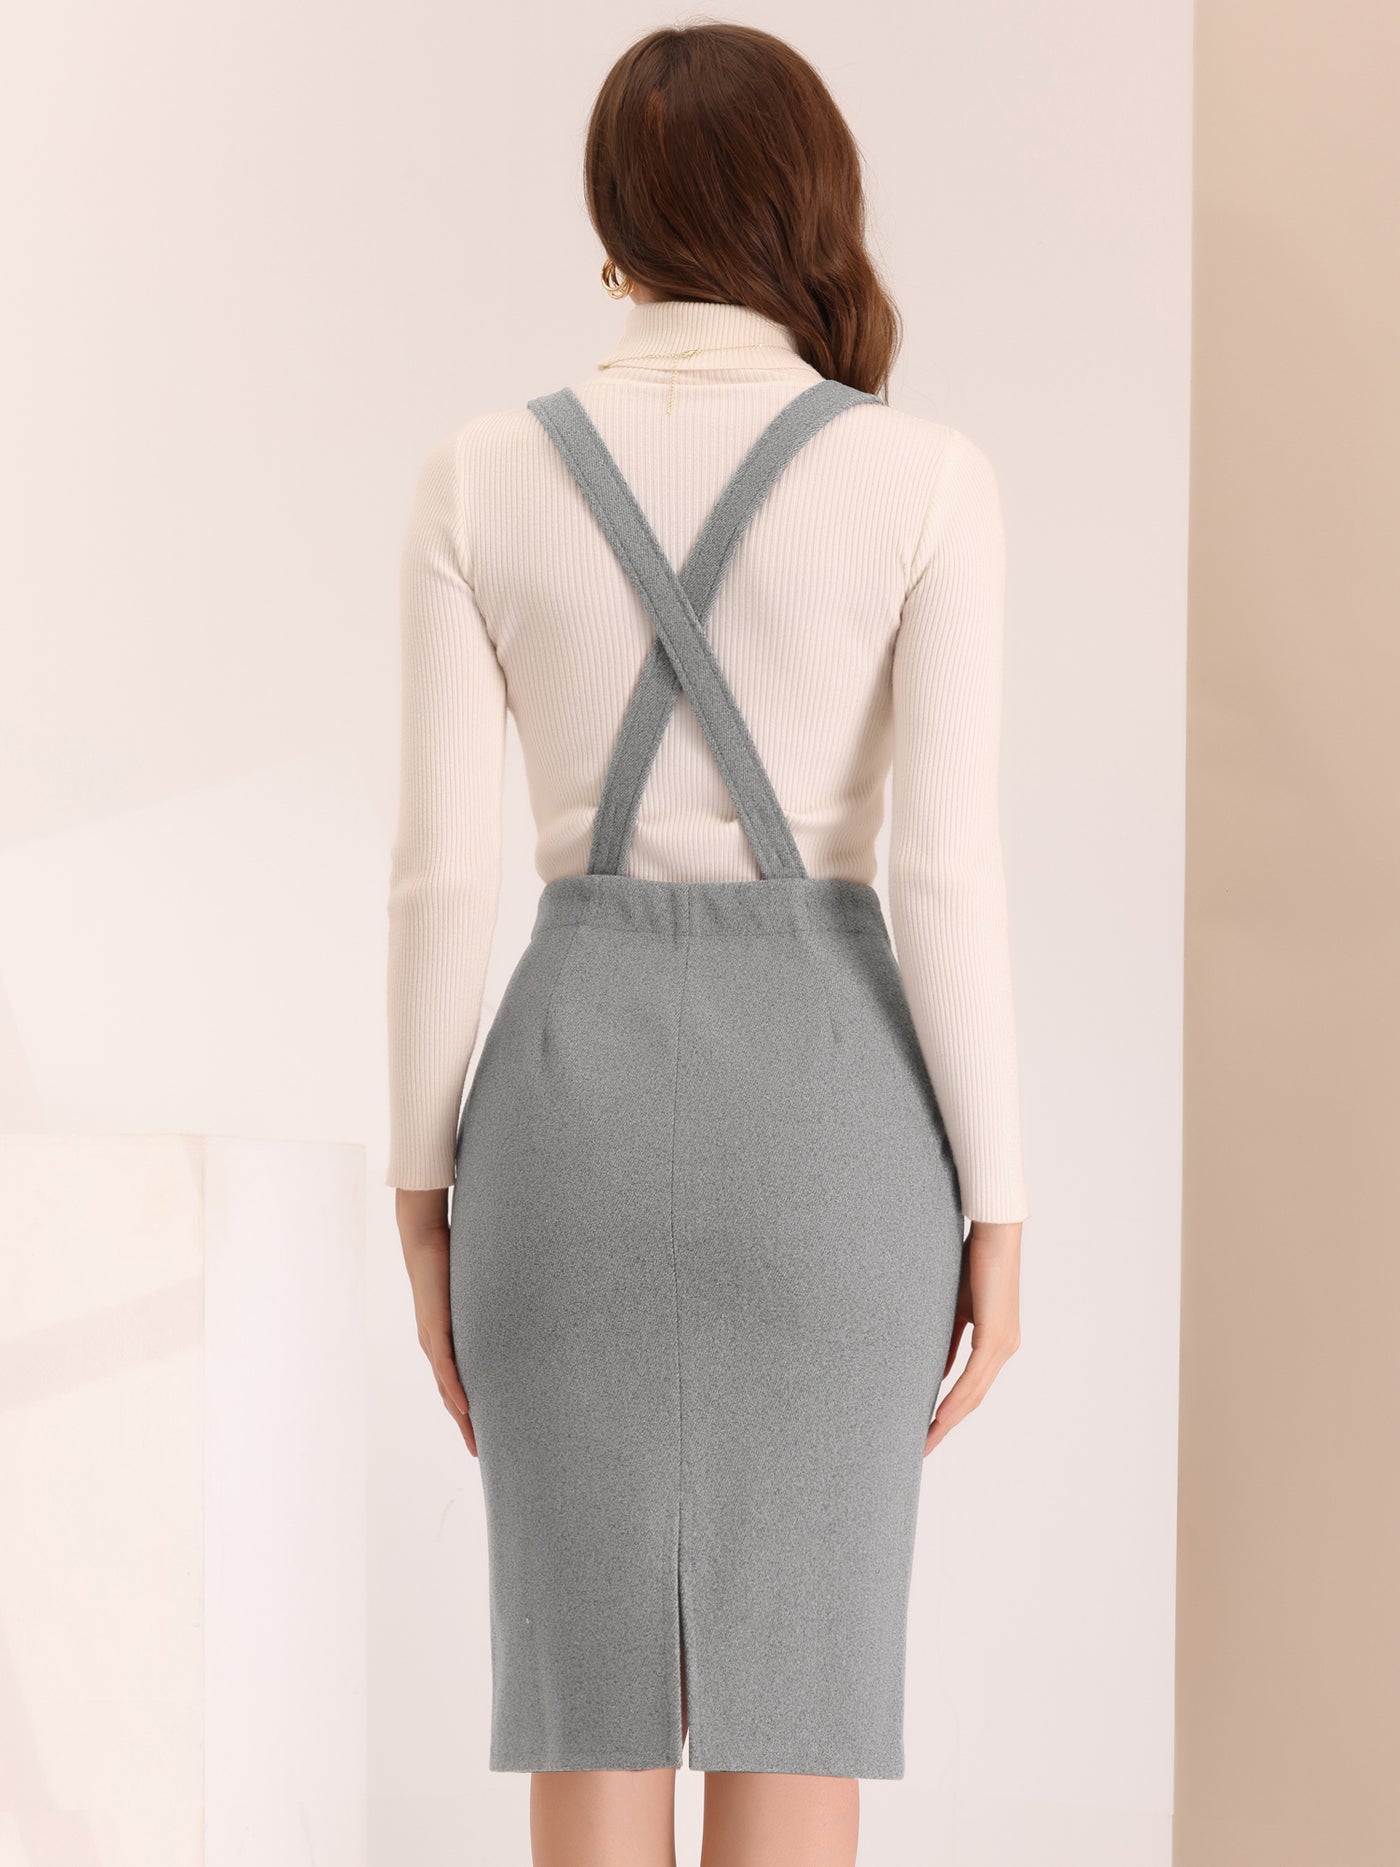 Allegra K Pencil Skirt for Women's High Waist Adjustable Strap Split Back Bodycon Suspender Skirts